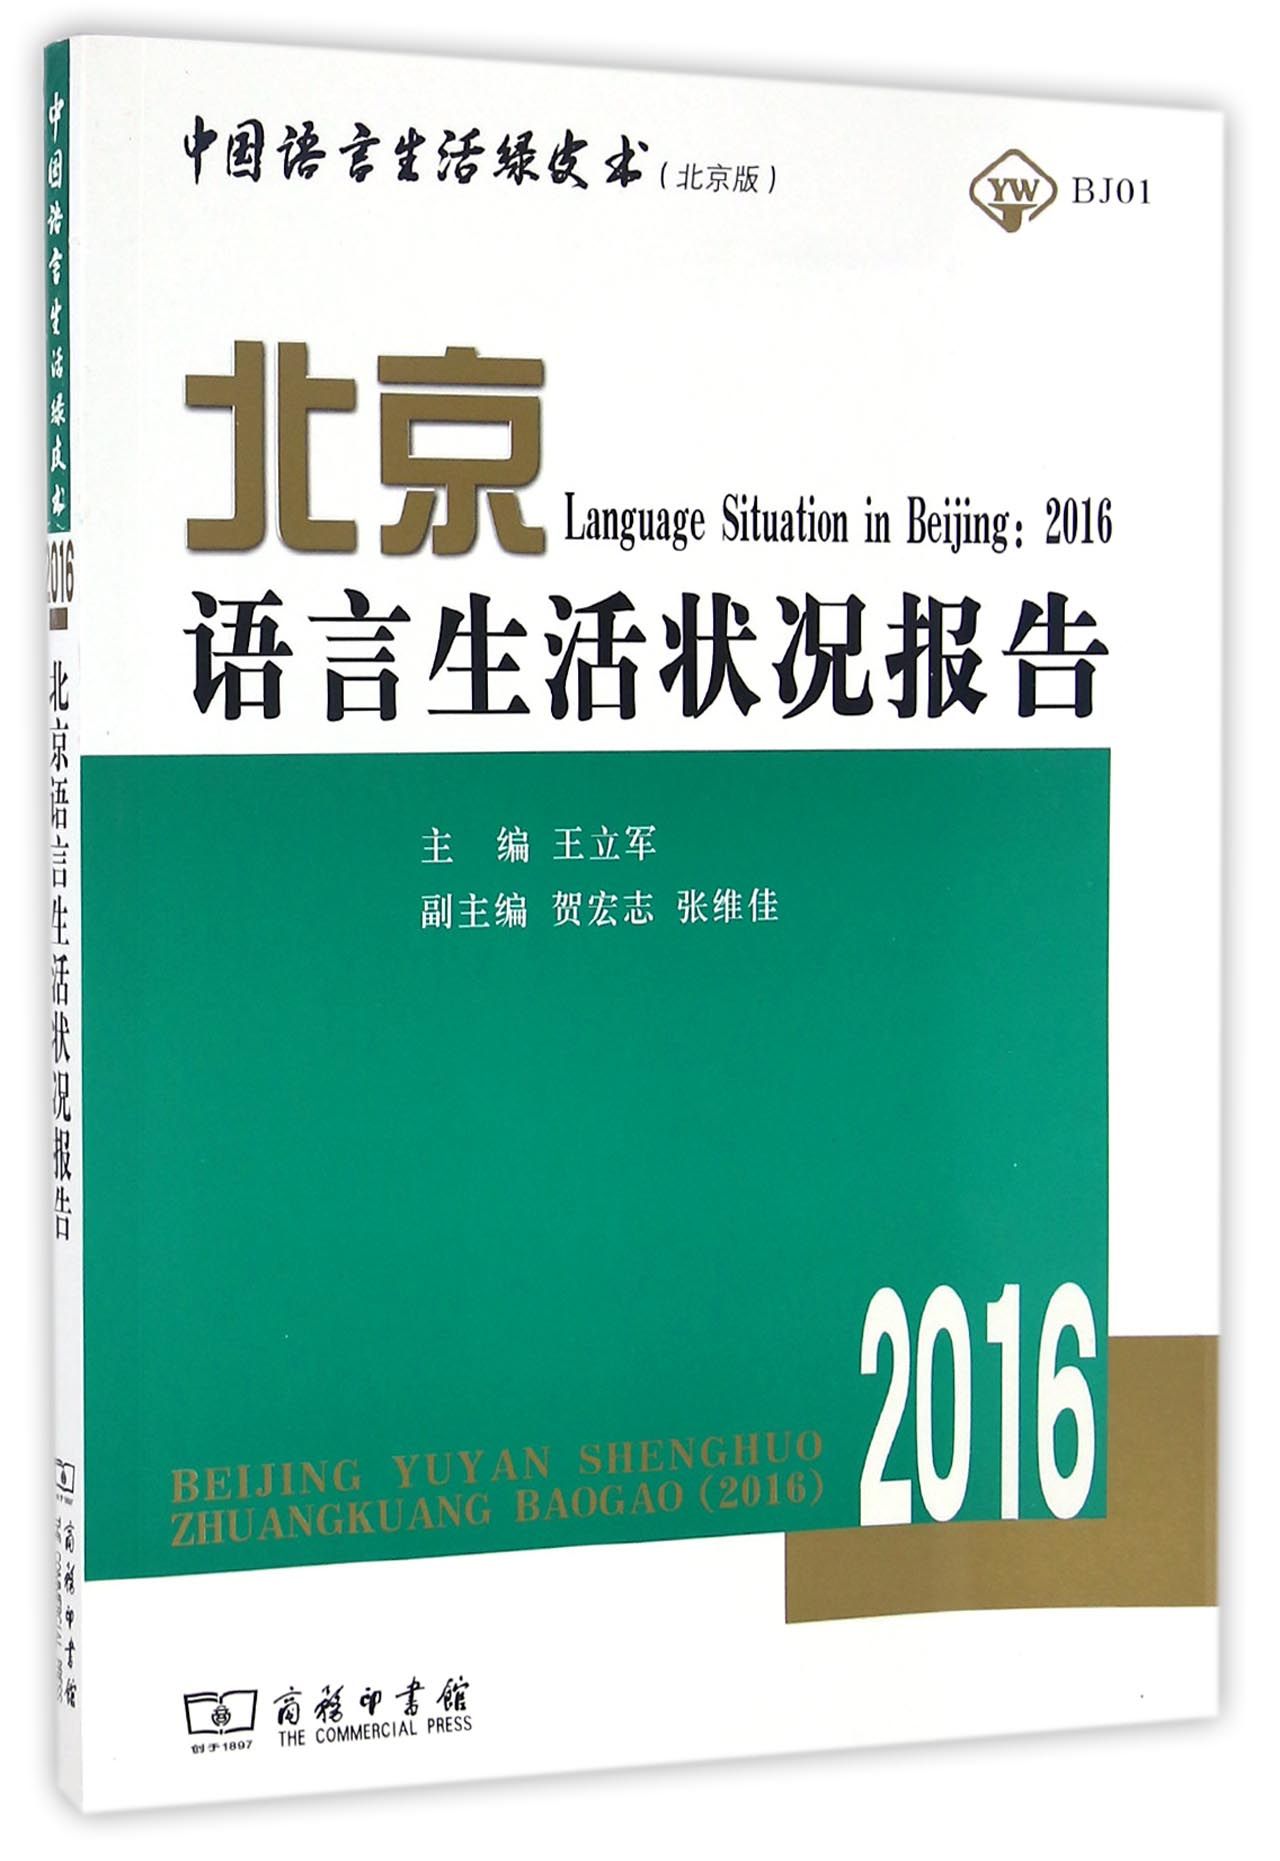 北京语言生活状况报告. 2016 / 王立军 主编 ; 贺宏志, 张维佳 副主编